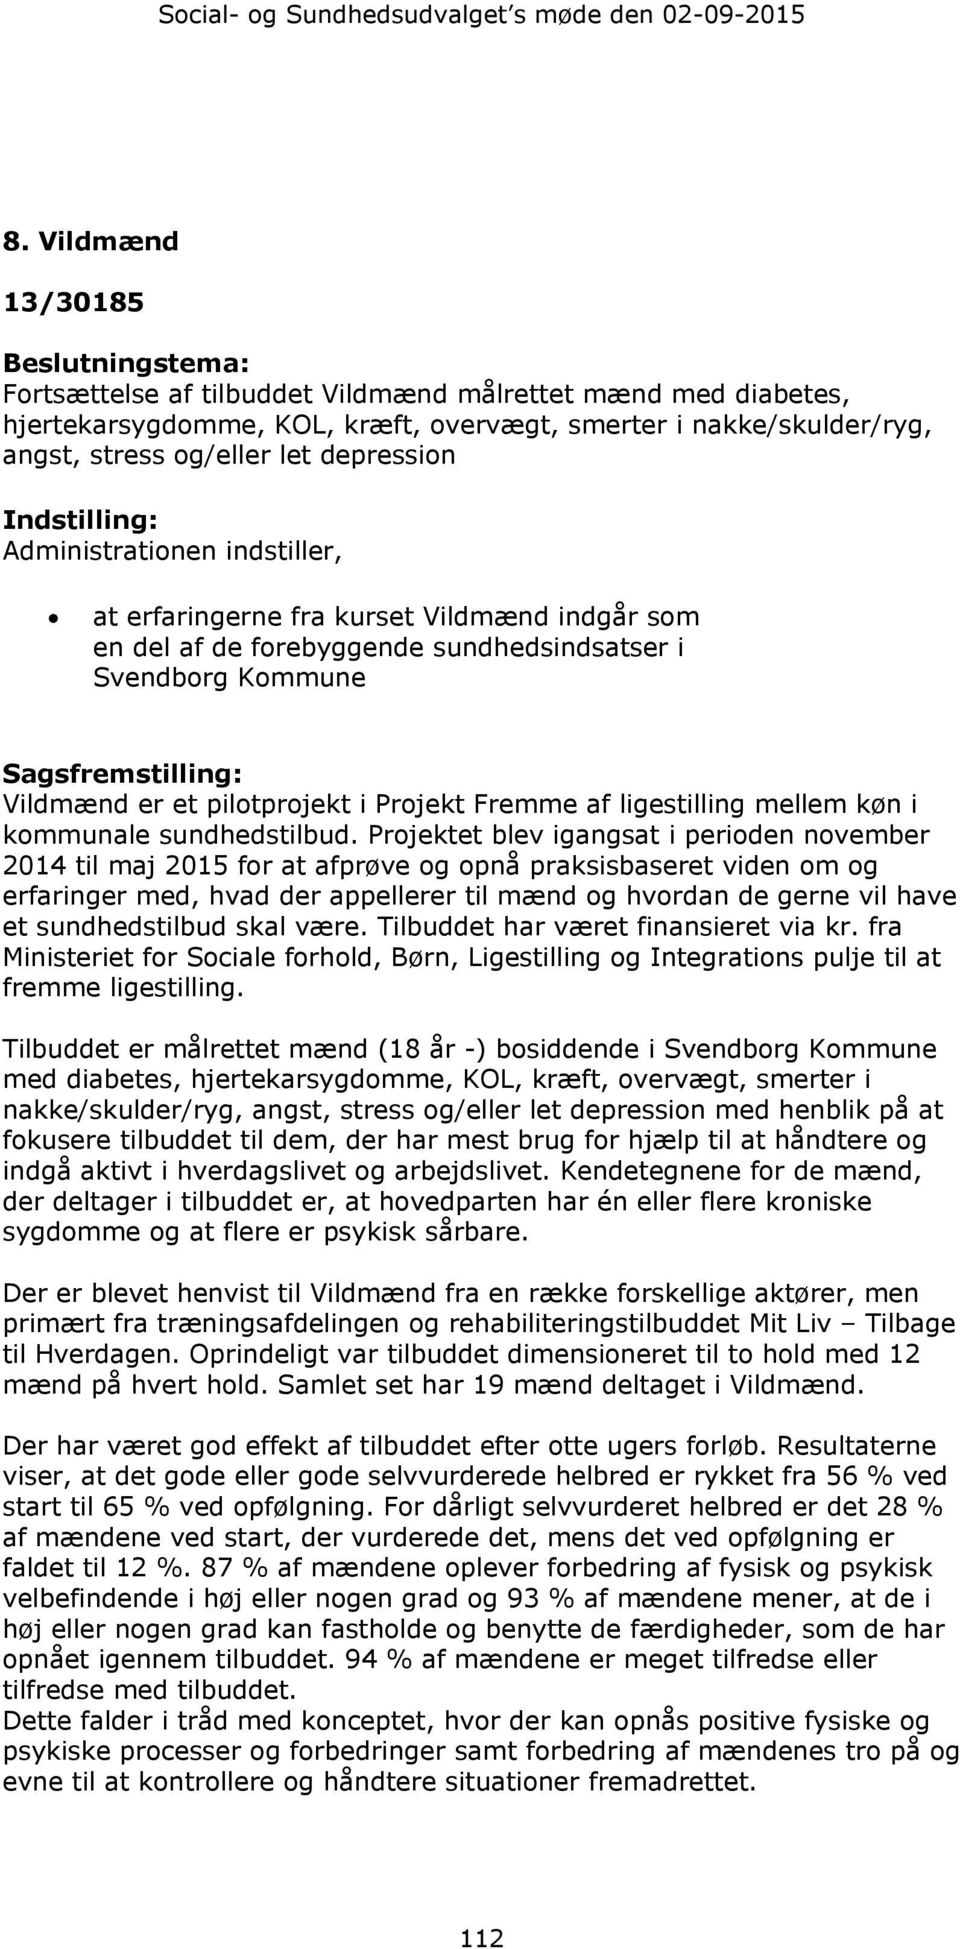 depression Indstilling: Administrationen indstiller, at erfaringerne fra kurset Vildmænd indgår som en del af de forebyggende sundhedsindsatser i Svendborg Kommune Sagsfremstilling: Vildmænd er et